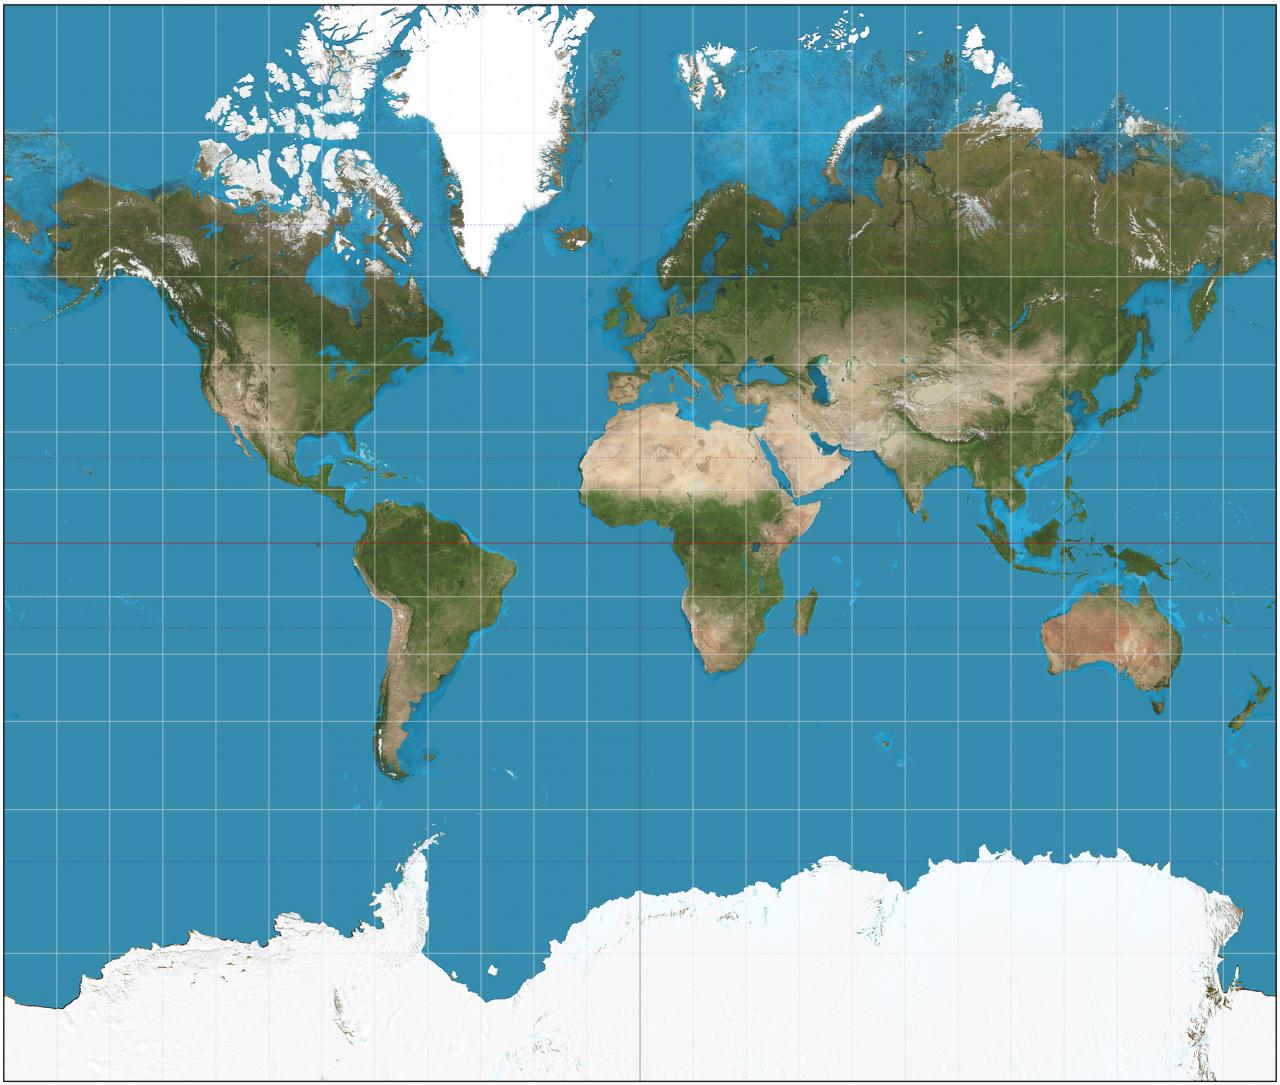 خريطة العالم صماء , صور مفصلة ومميزة لخريطة العالم بقاراتها المختلفة